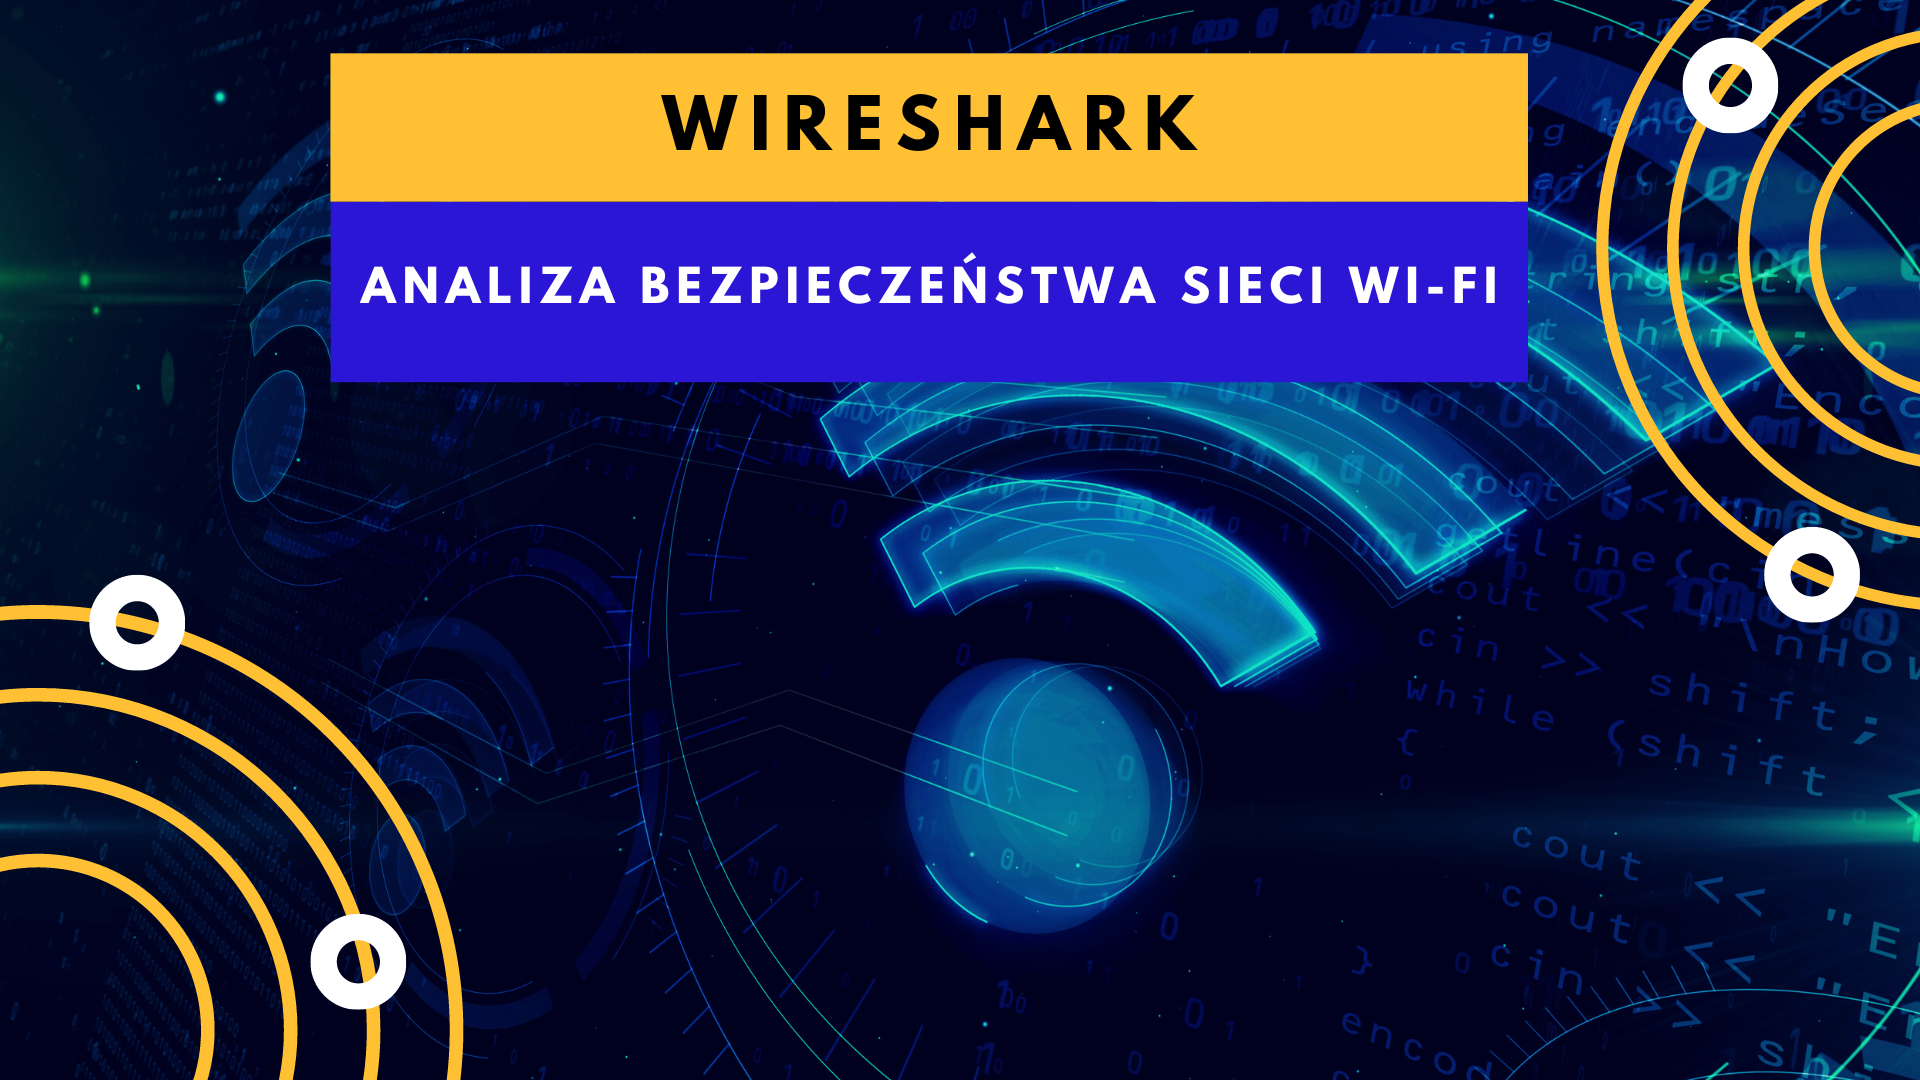 Wireshark - narzędzie do analizy bezpieczeństwa sieci Wi-Fi - Askomputer